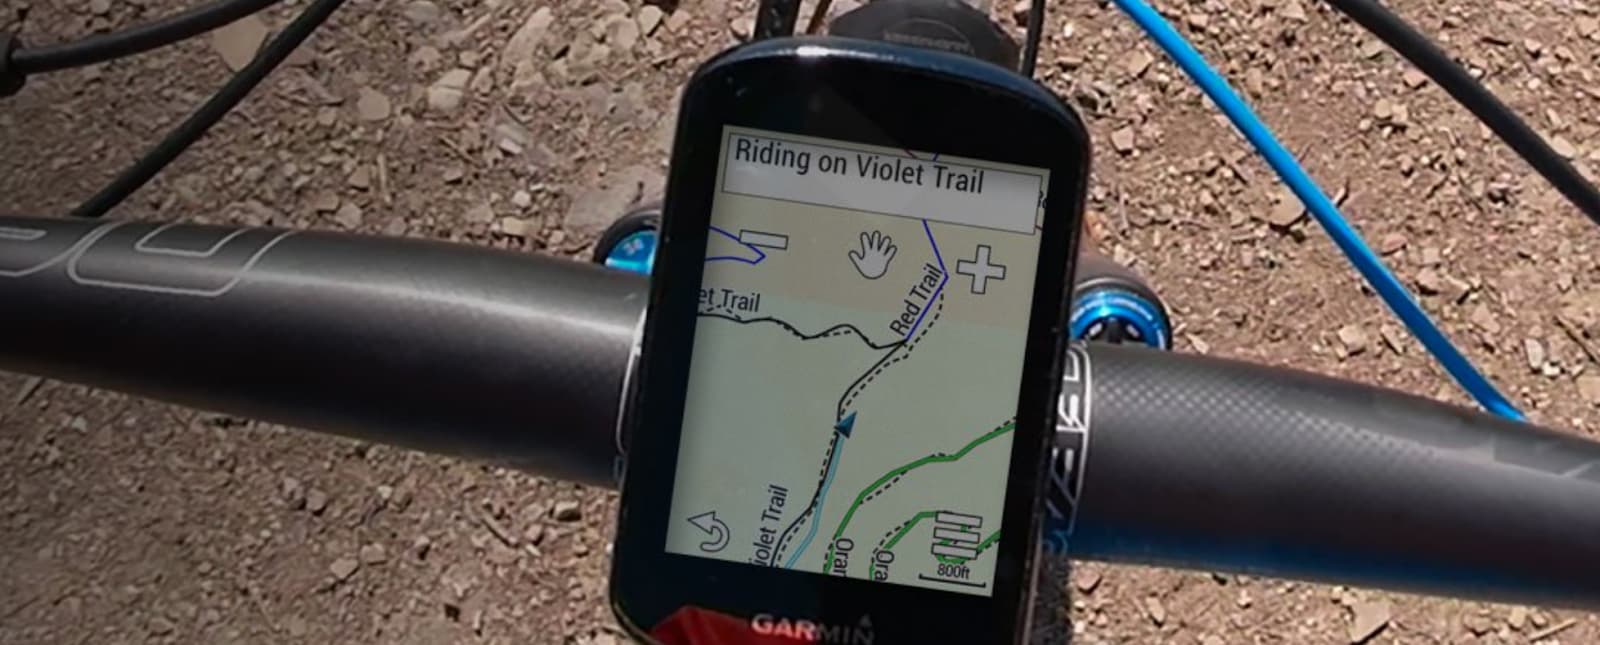 El GPS de Garmin Edge 530 para bicicletas es de lo mejorcito en calidad  precio, y ahora está más rebajado que nunca